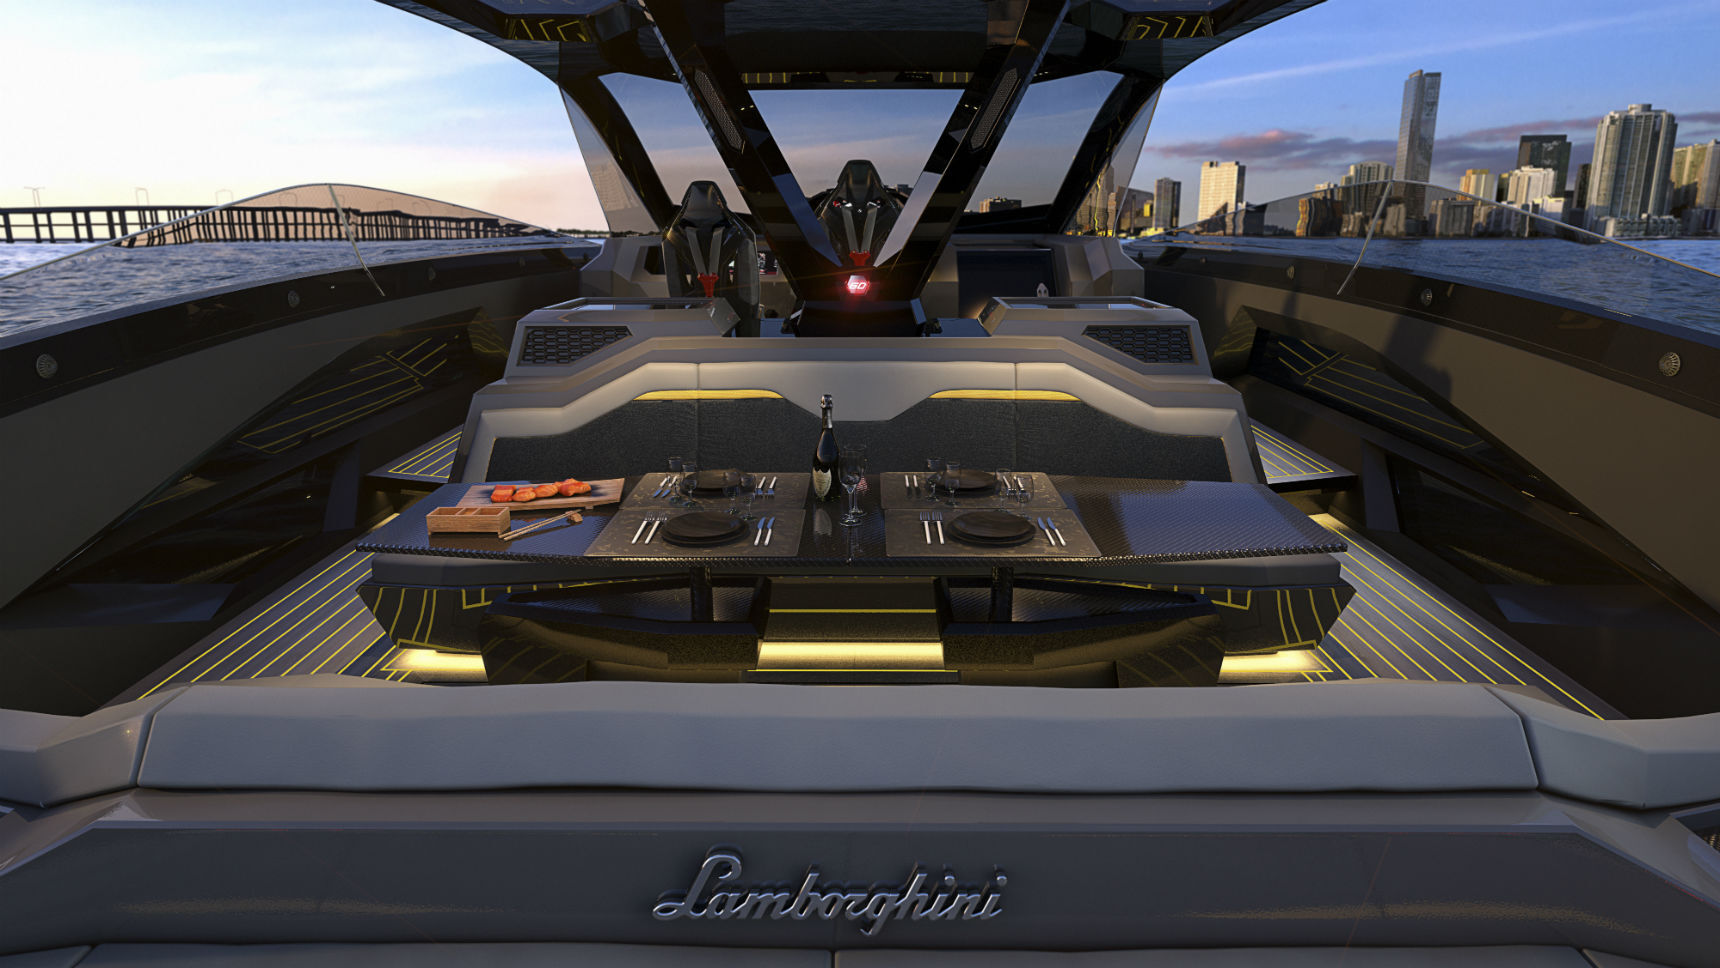 Lamborghini построил яхту в стиле Sian